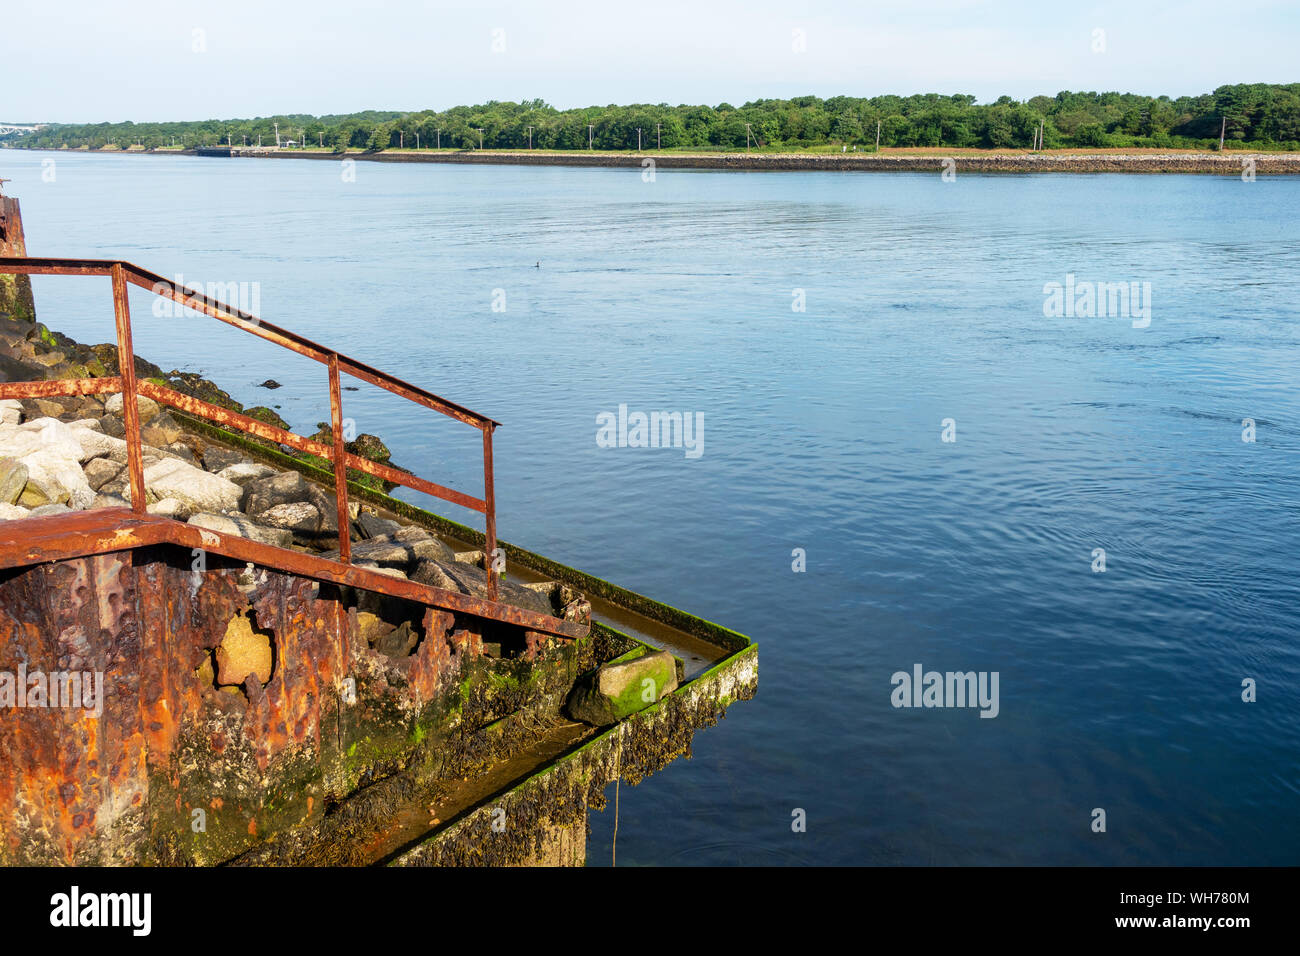 La oxidación pasamano de acero y muro de retención con orificios, algas, percebes y algas de agua salada a lo largo de Cape Cod Canal Foto de stock